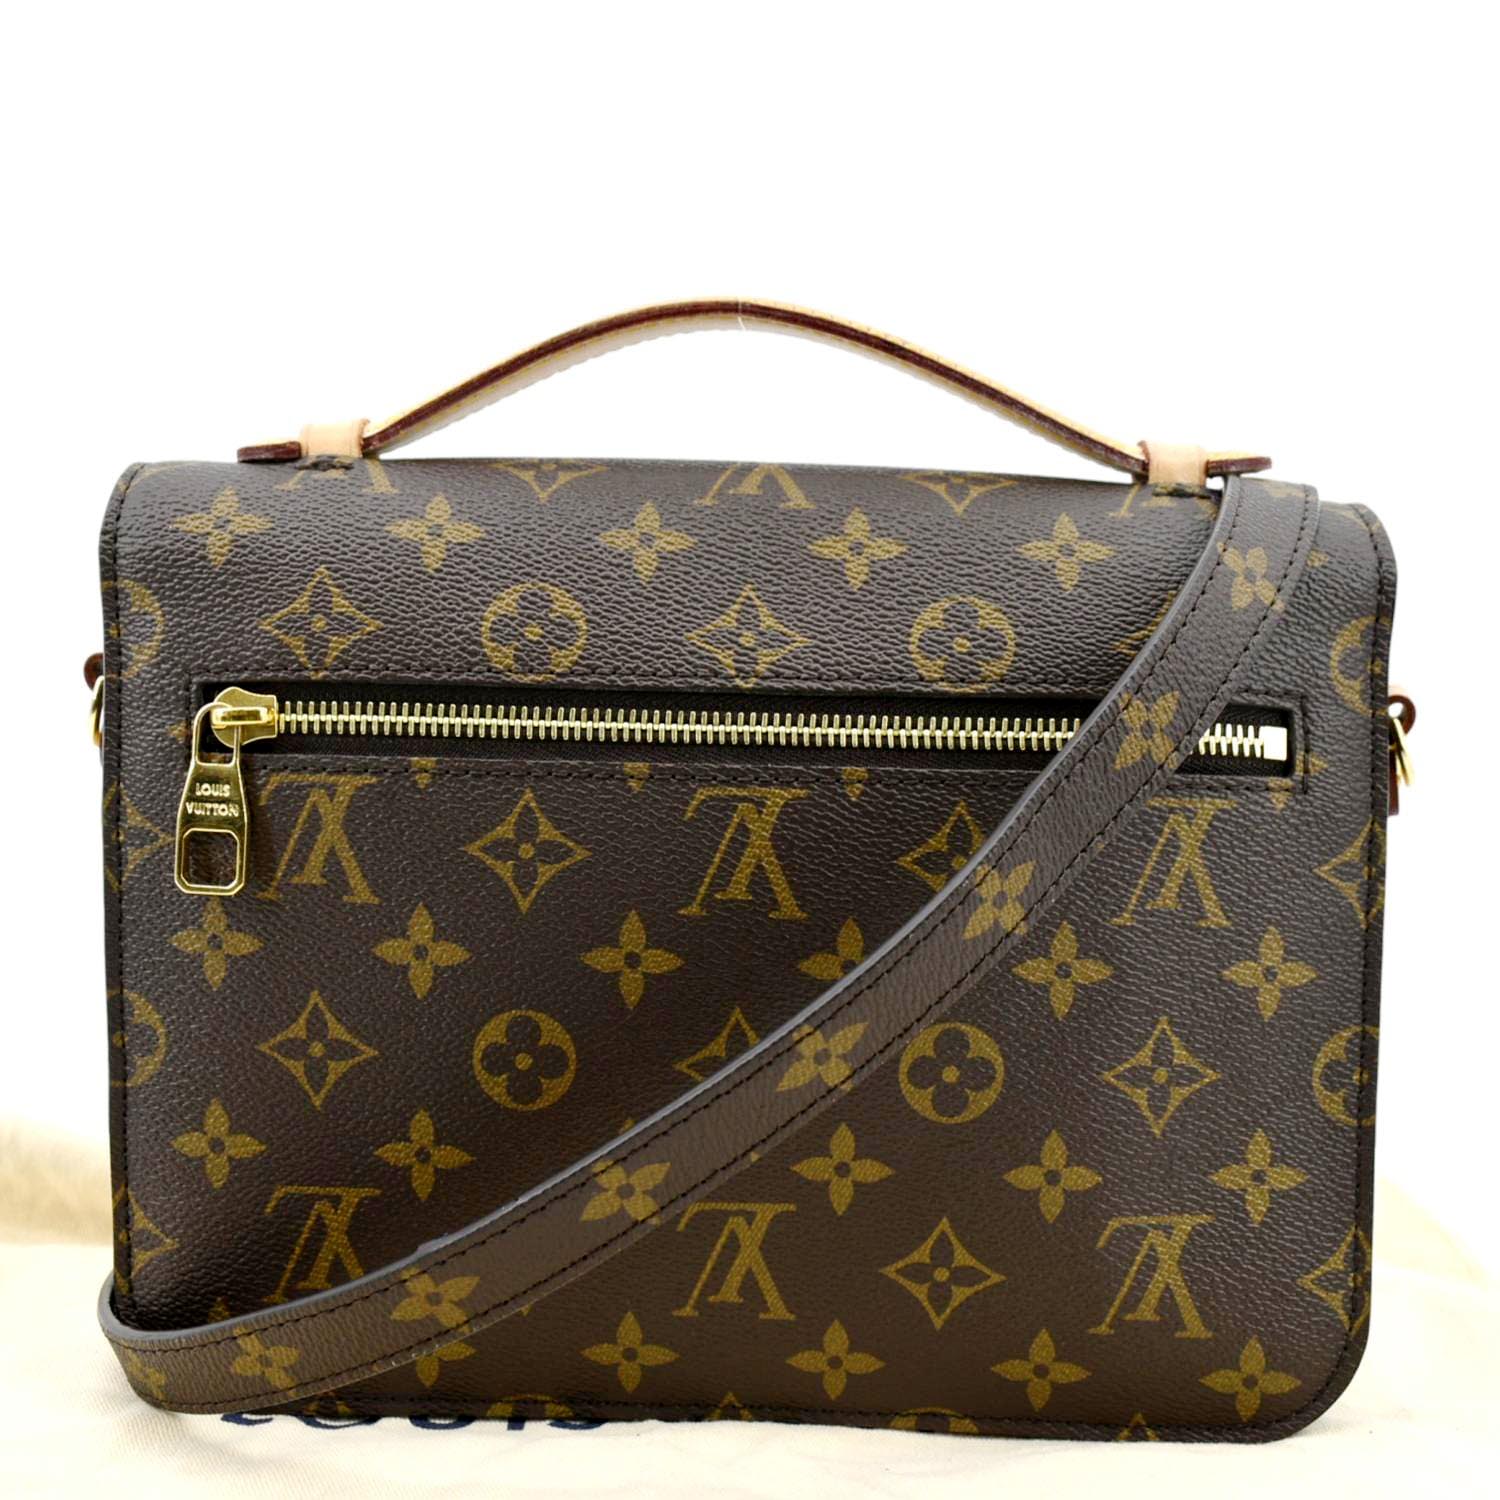 Sell Louis Vuitton Metis Monogram Bag - Brown